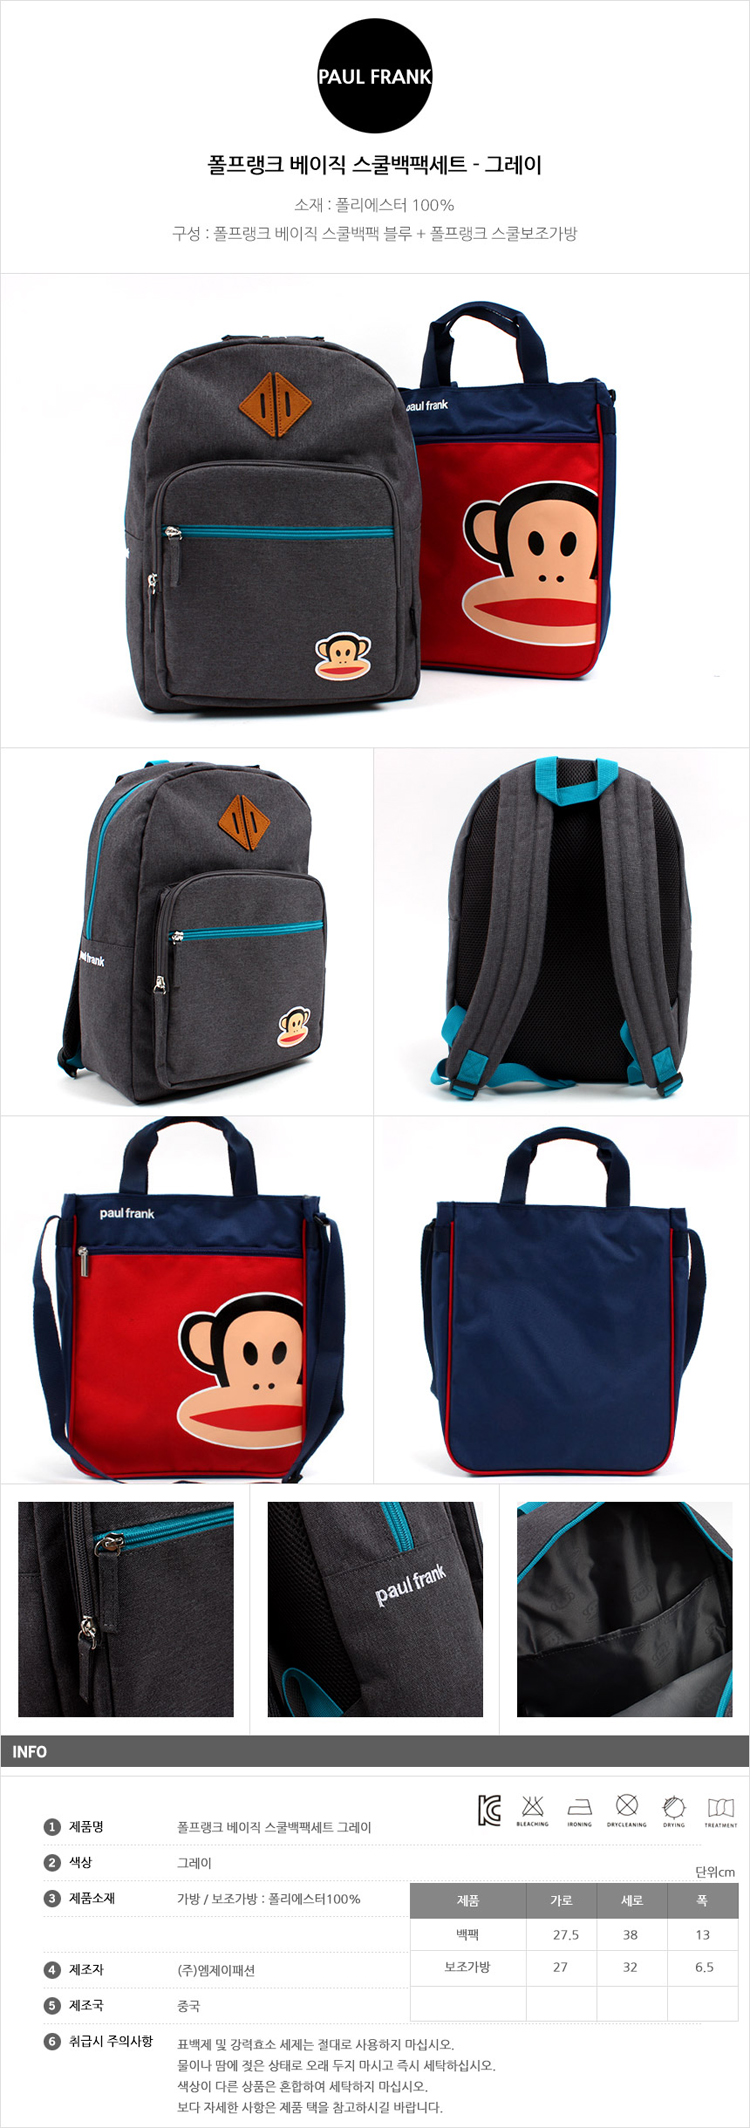 가방,책가방,스쿨가방,입학선물,새학기가방,백팩,보조가방,가방세트,캐릭터가방,백팩세트